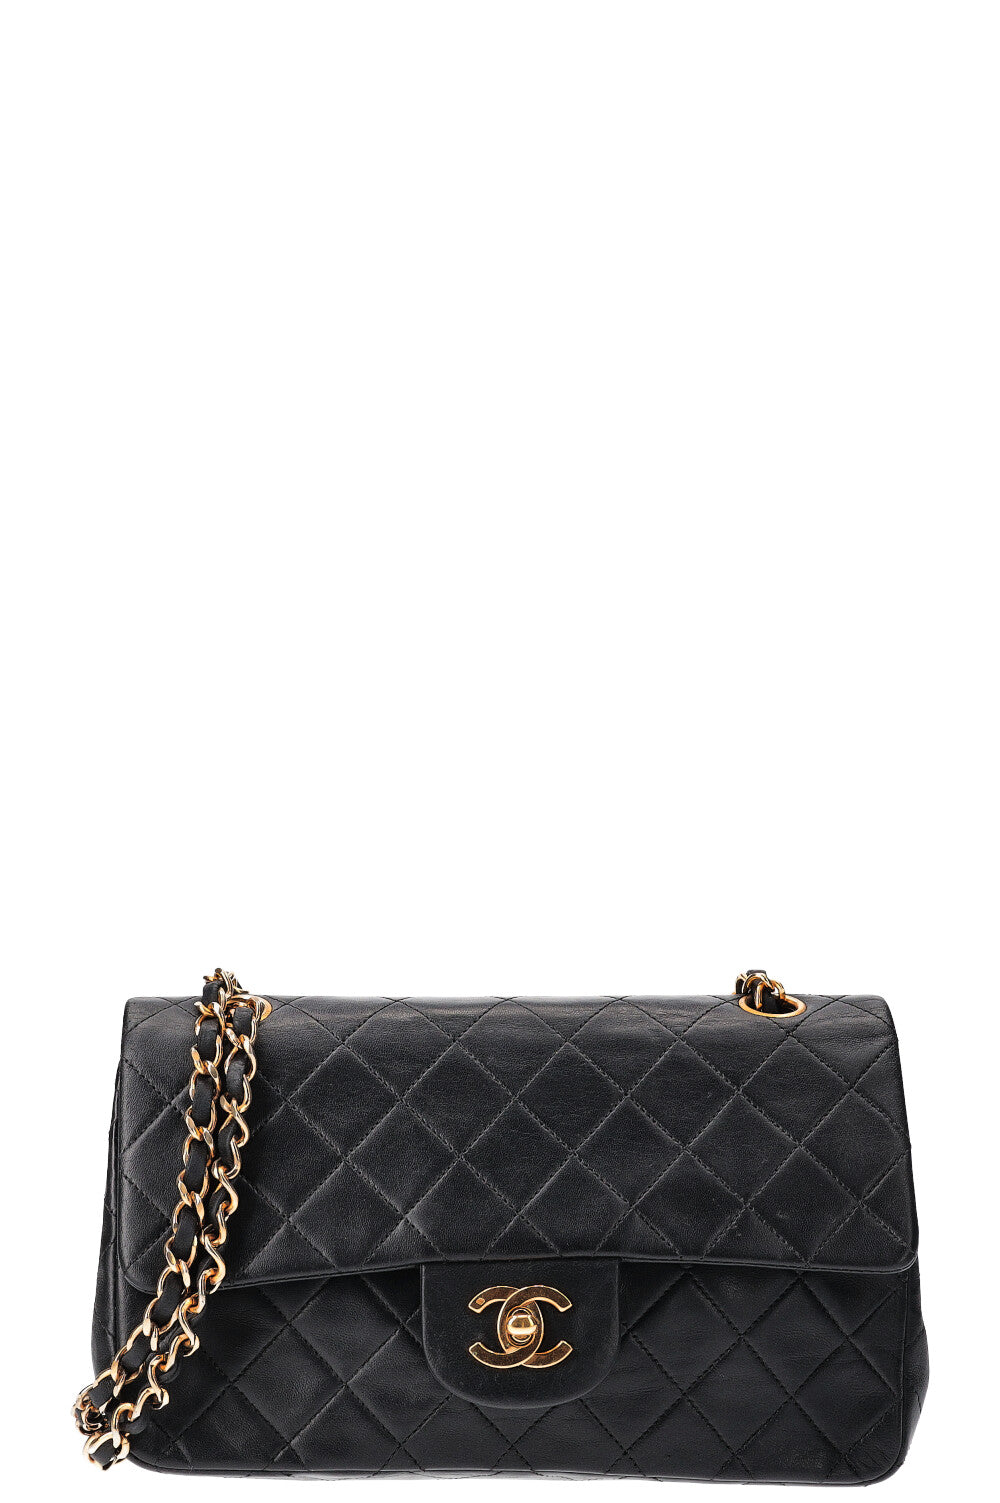 Chanel Vintage Classic Medium Double Flap Bag - Neutrals Shoulder